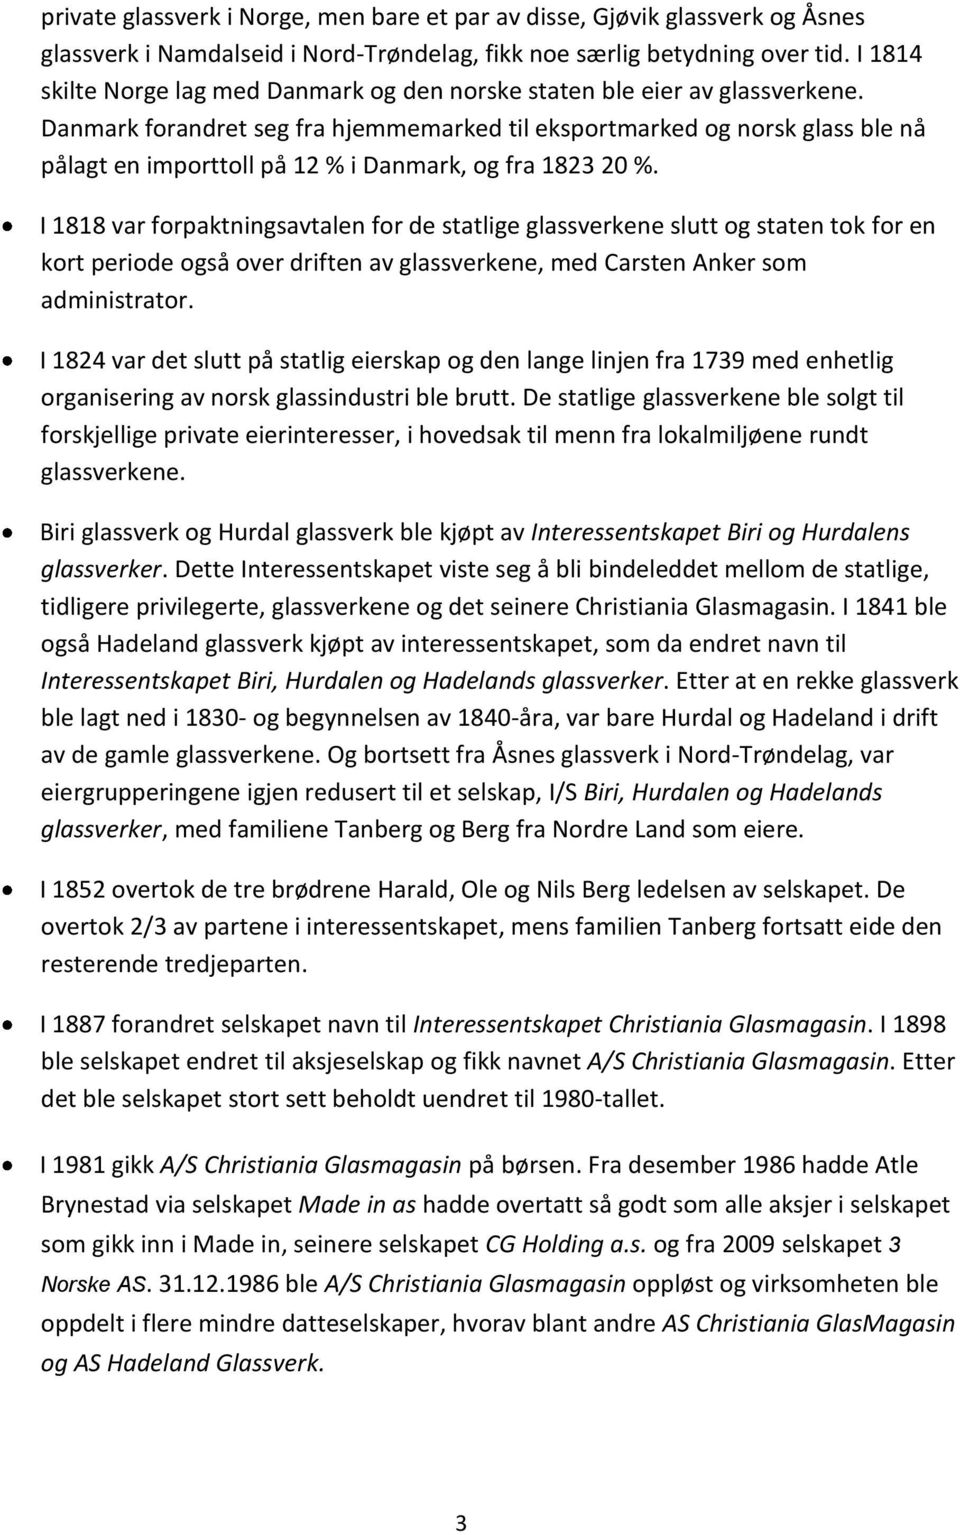 Danmark forandret seg fra hjemmemarked til eksportmarked og norsk glass ble nå pålagt en importtoll på 12 % i Danmark, og fra 1823 20 %.